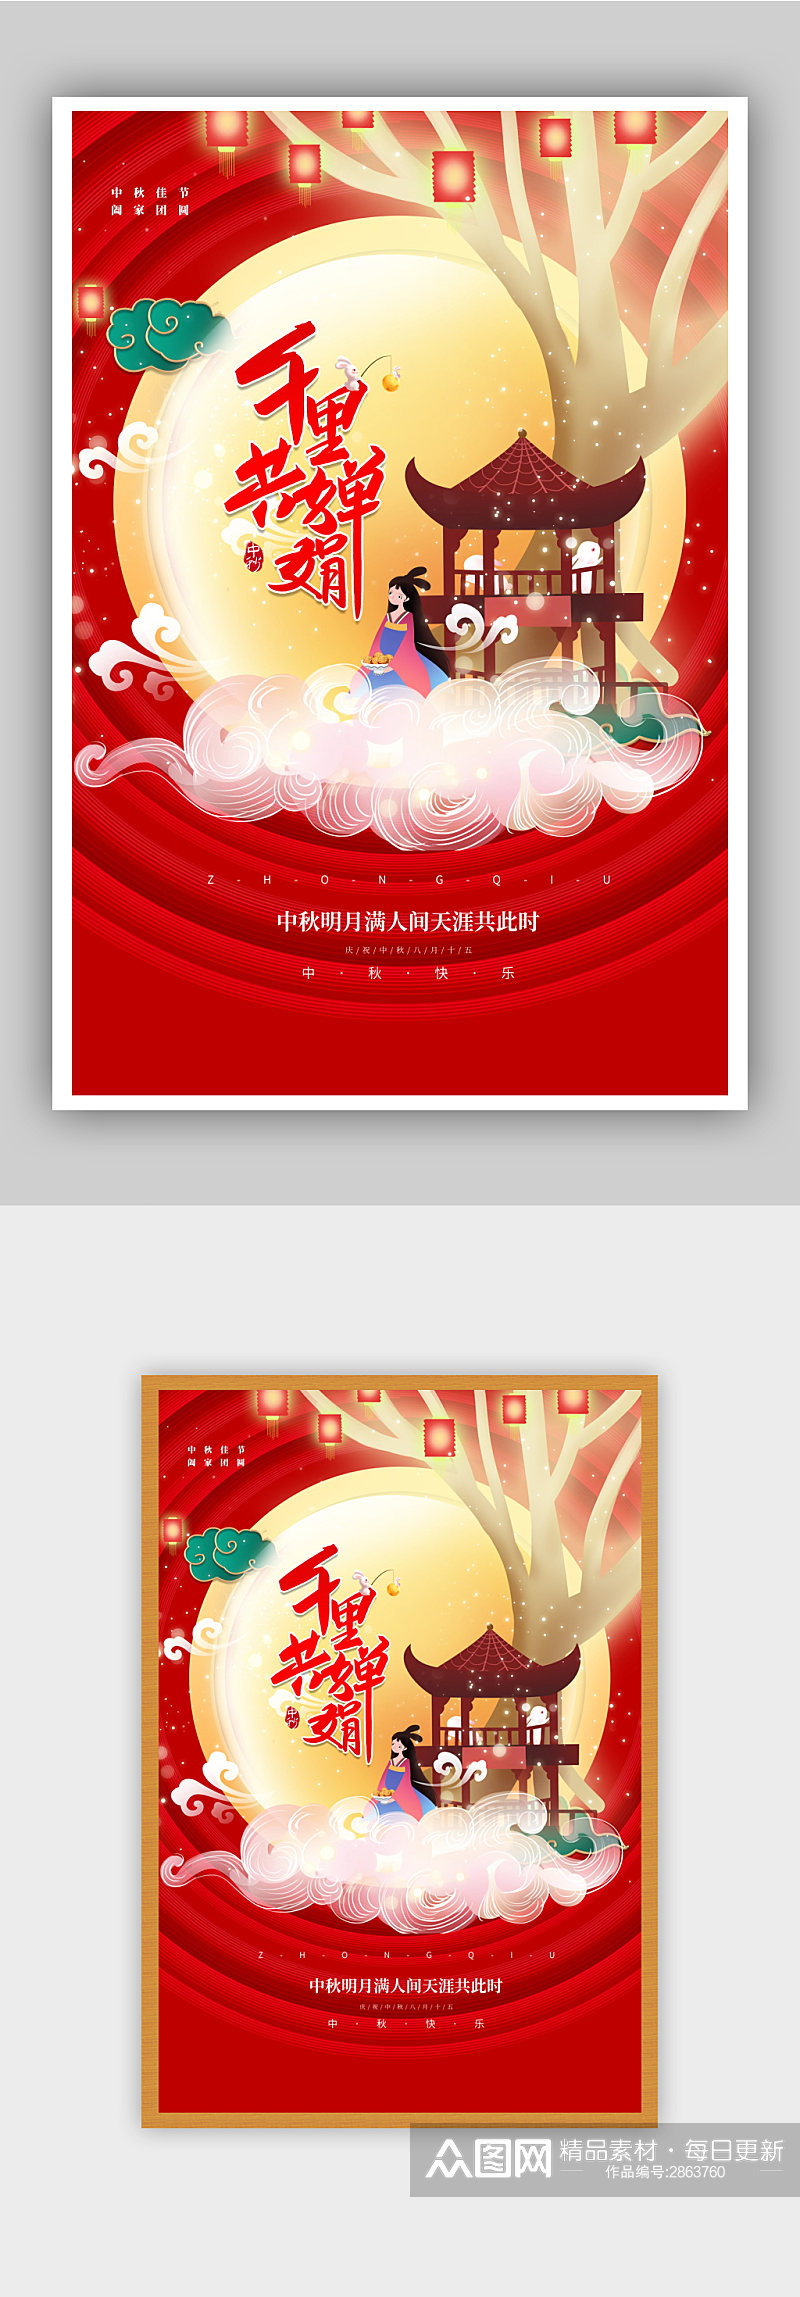 红色简约创意中秋节中秋佳节宣传海报素材